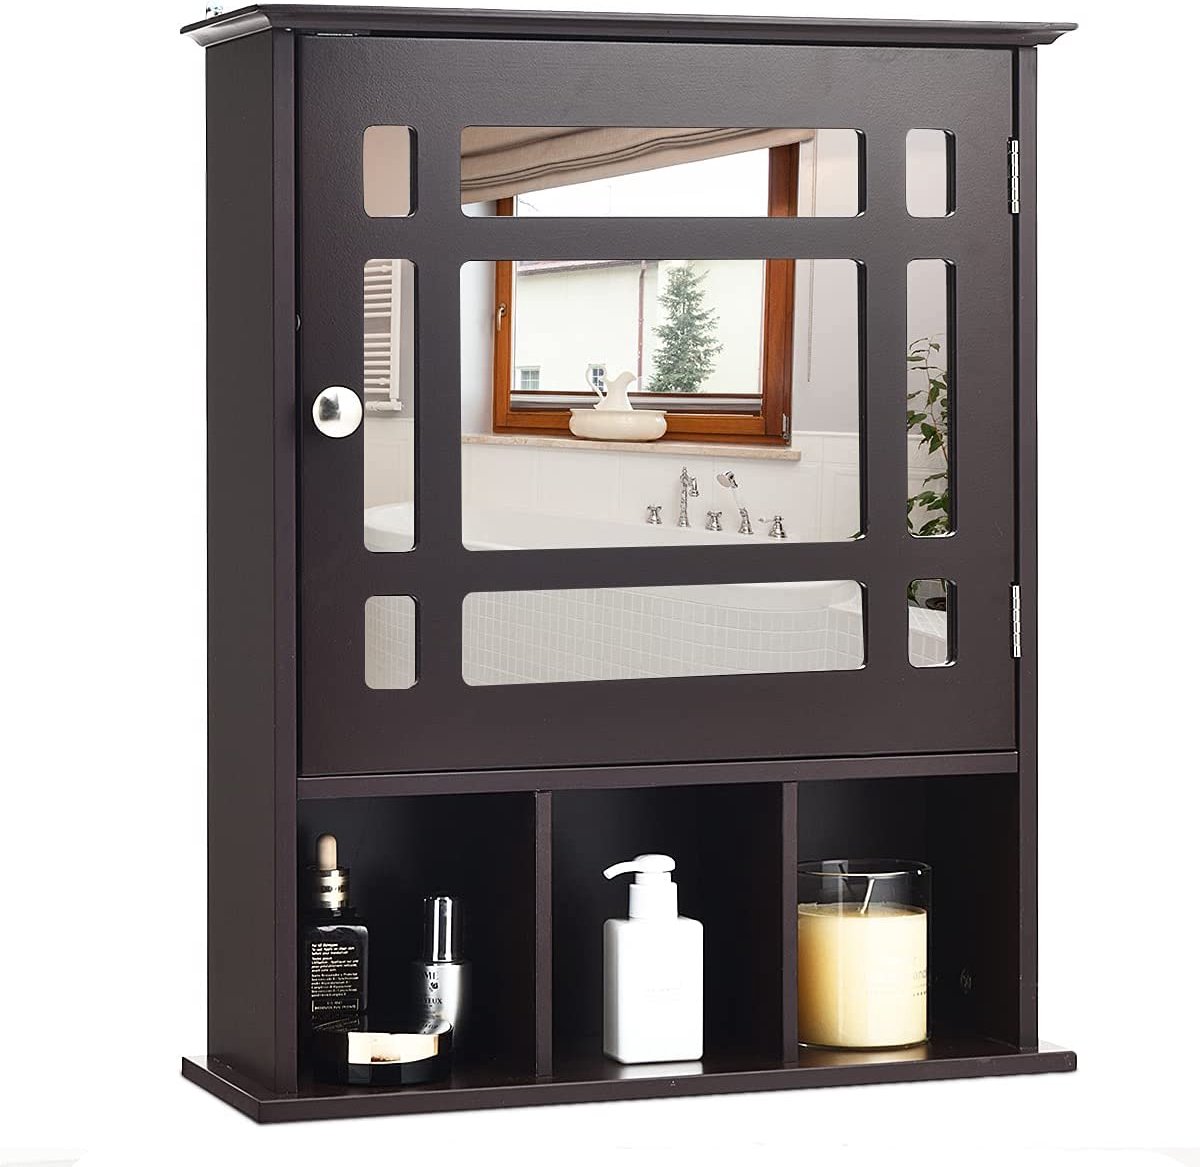 Badkamerkast muur opbergkast, spiegelkast organisator, houten opknoping medicijnkast organisator met verstelbare plank en 3 open vakken (Bruin)